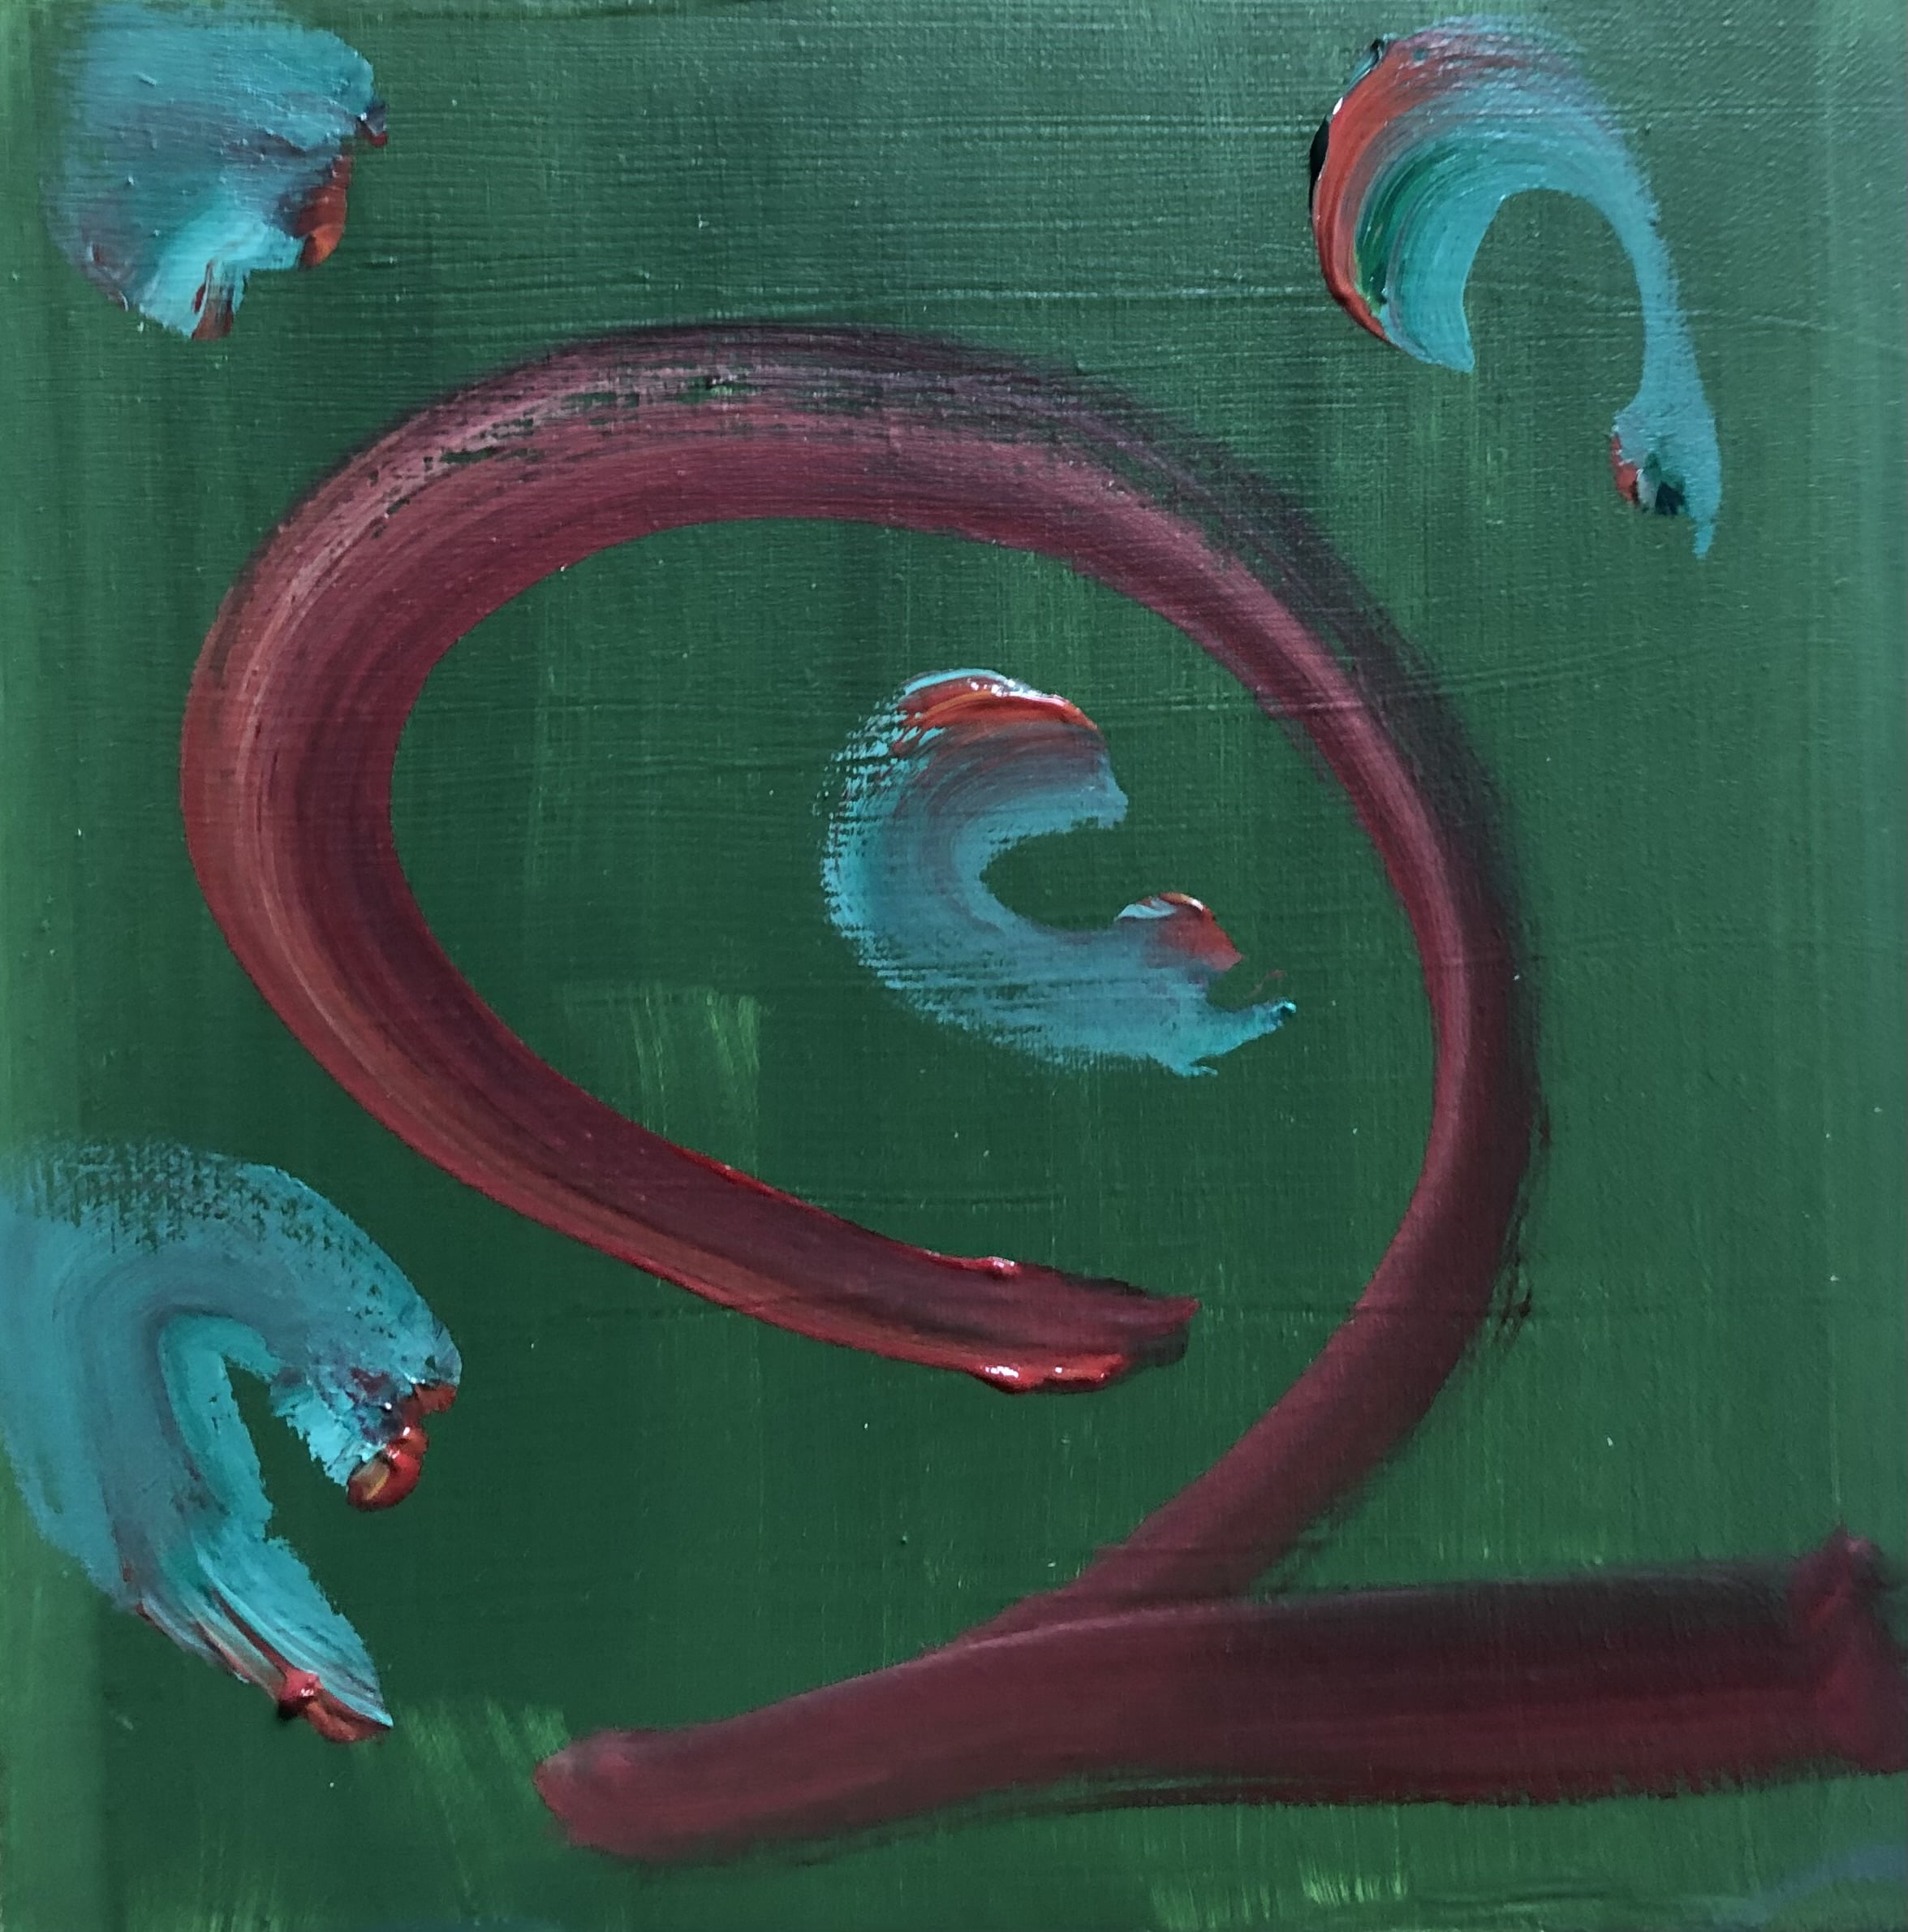 sur un fond vert, le chiffre deux ou un serpent joue ou combat de petits animaux de couleurs bleu vert qui ressemblent à des écureuils, un perroquet et un hérisson